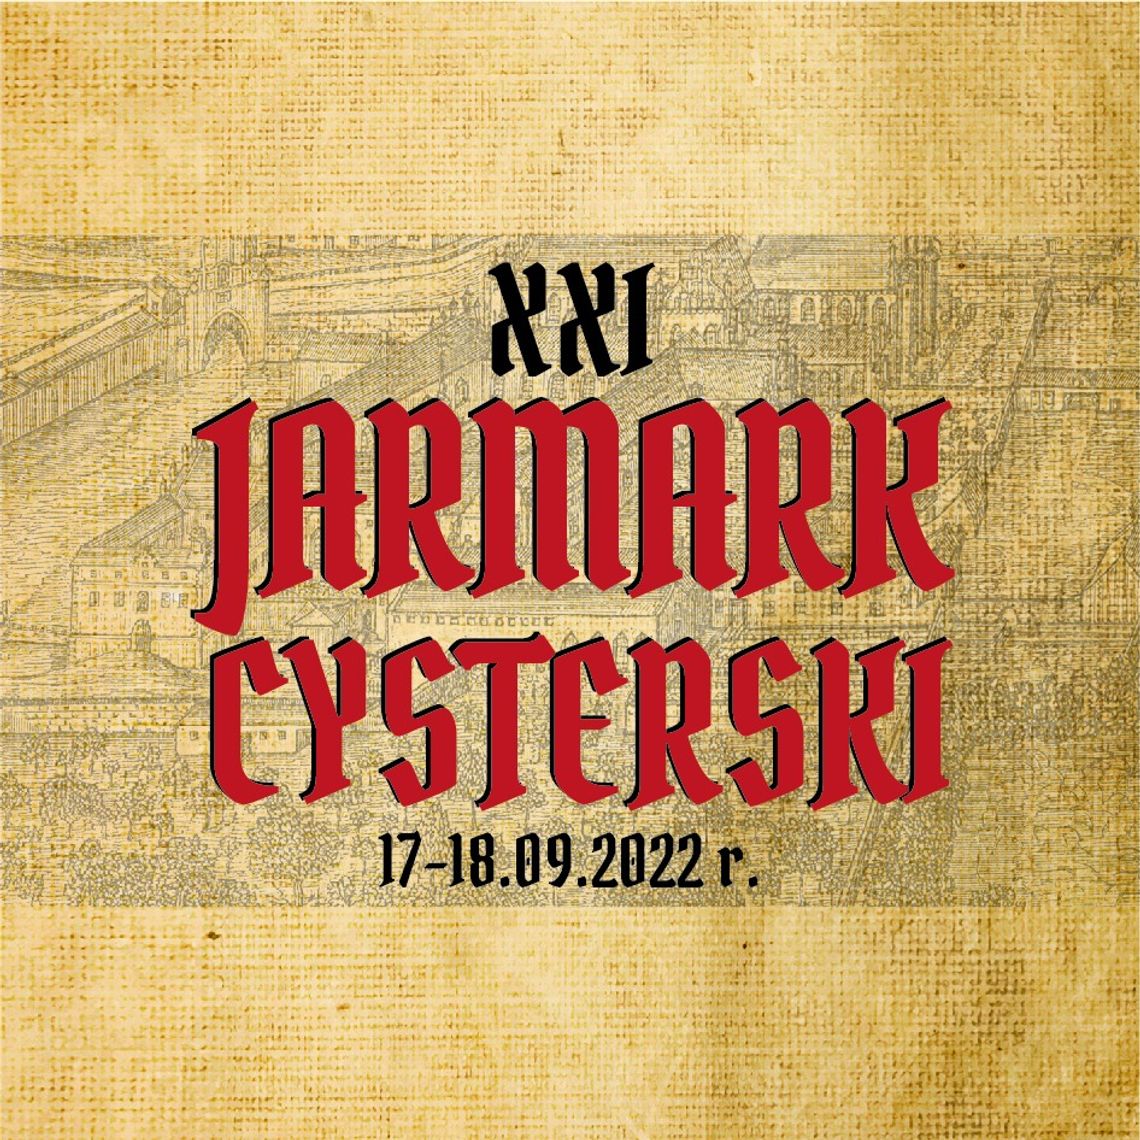 Przed nami XXI Jarmark Cysterski. Sprawdź co czeka na uczestników!